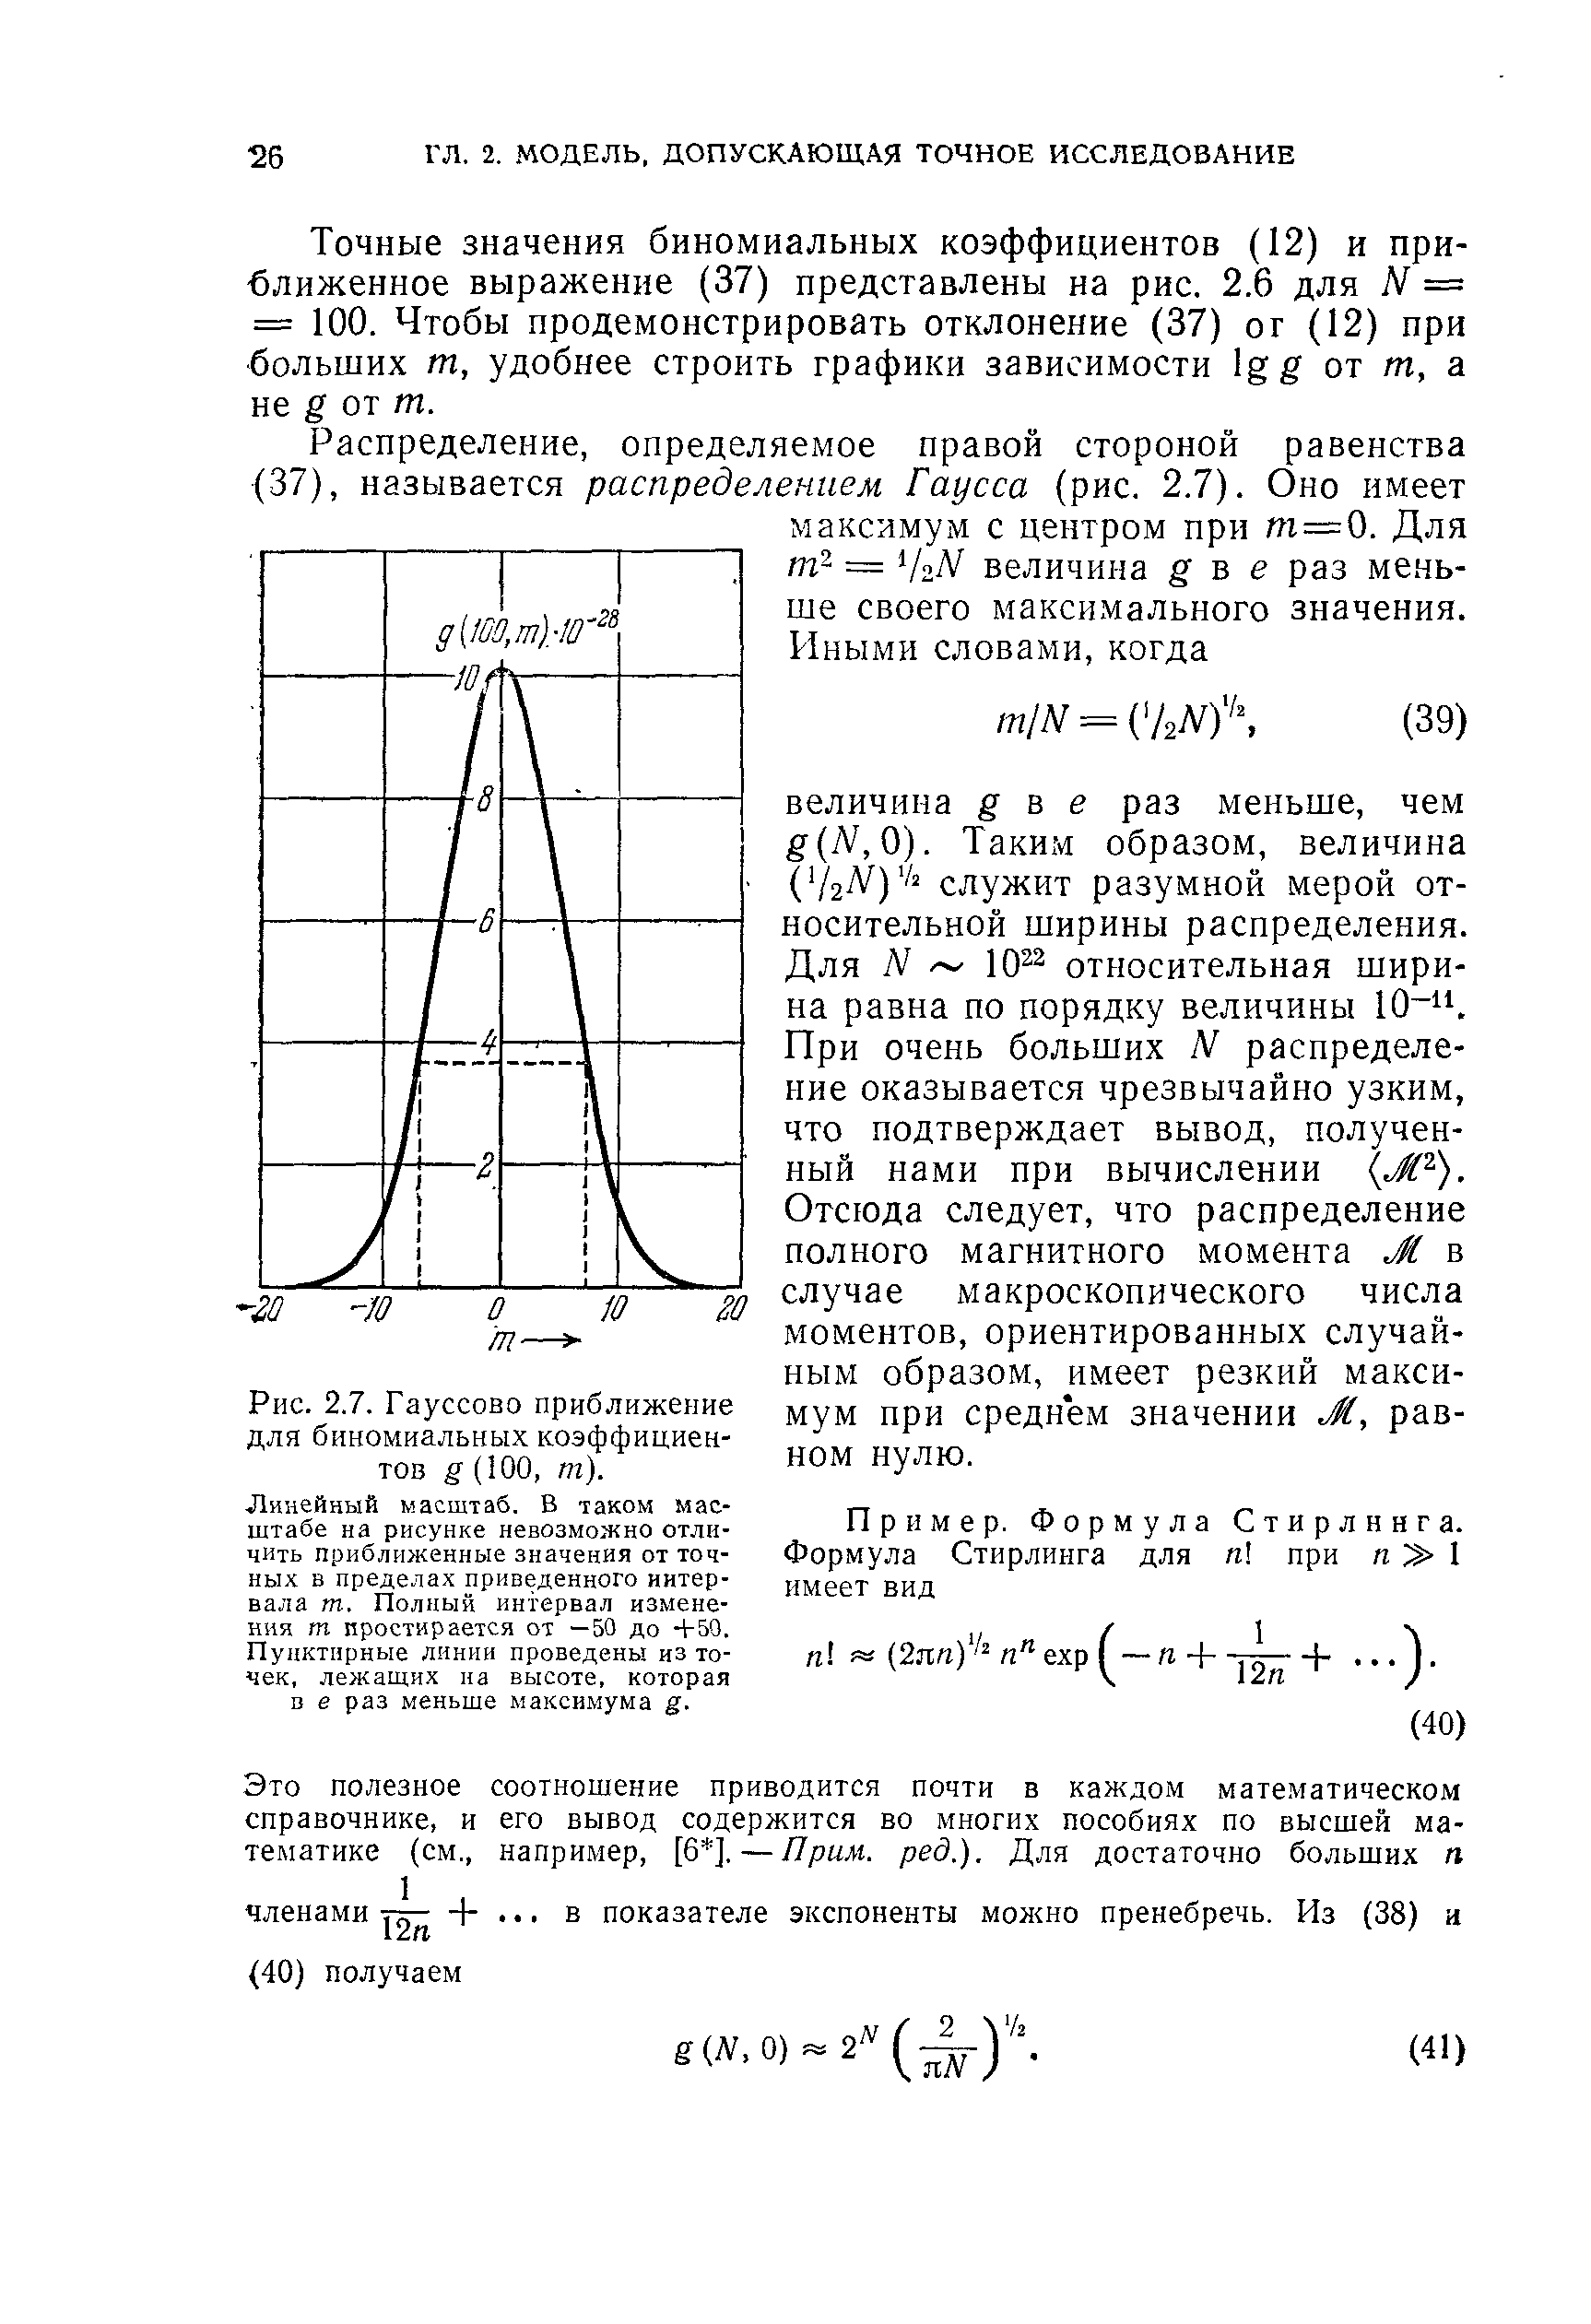 Рис. 2.7. Гауссово приближение для биномиальных коэффициентов (100, т).
